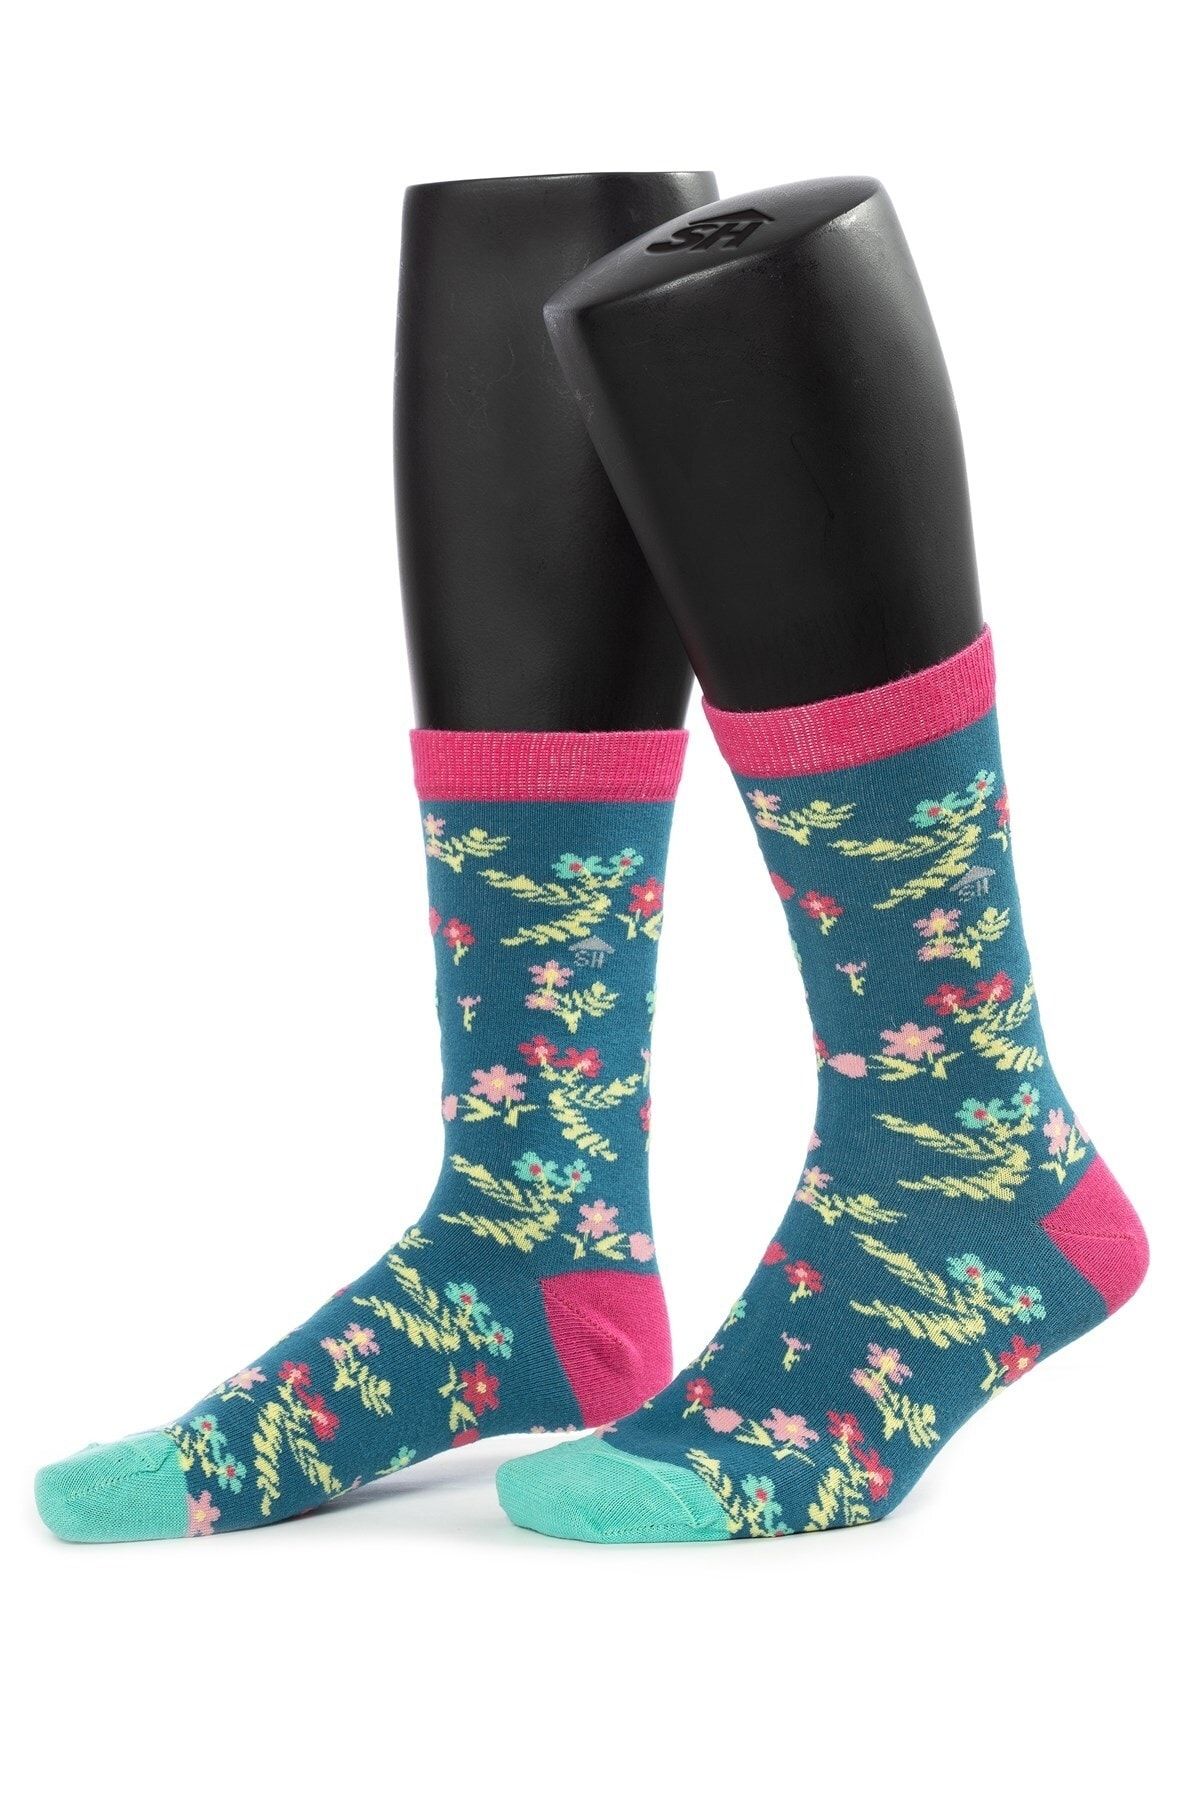 The Socks House Kadın Mine Çiçeği Desenli Çorap